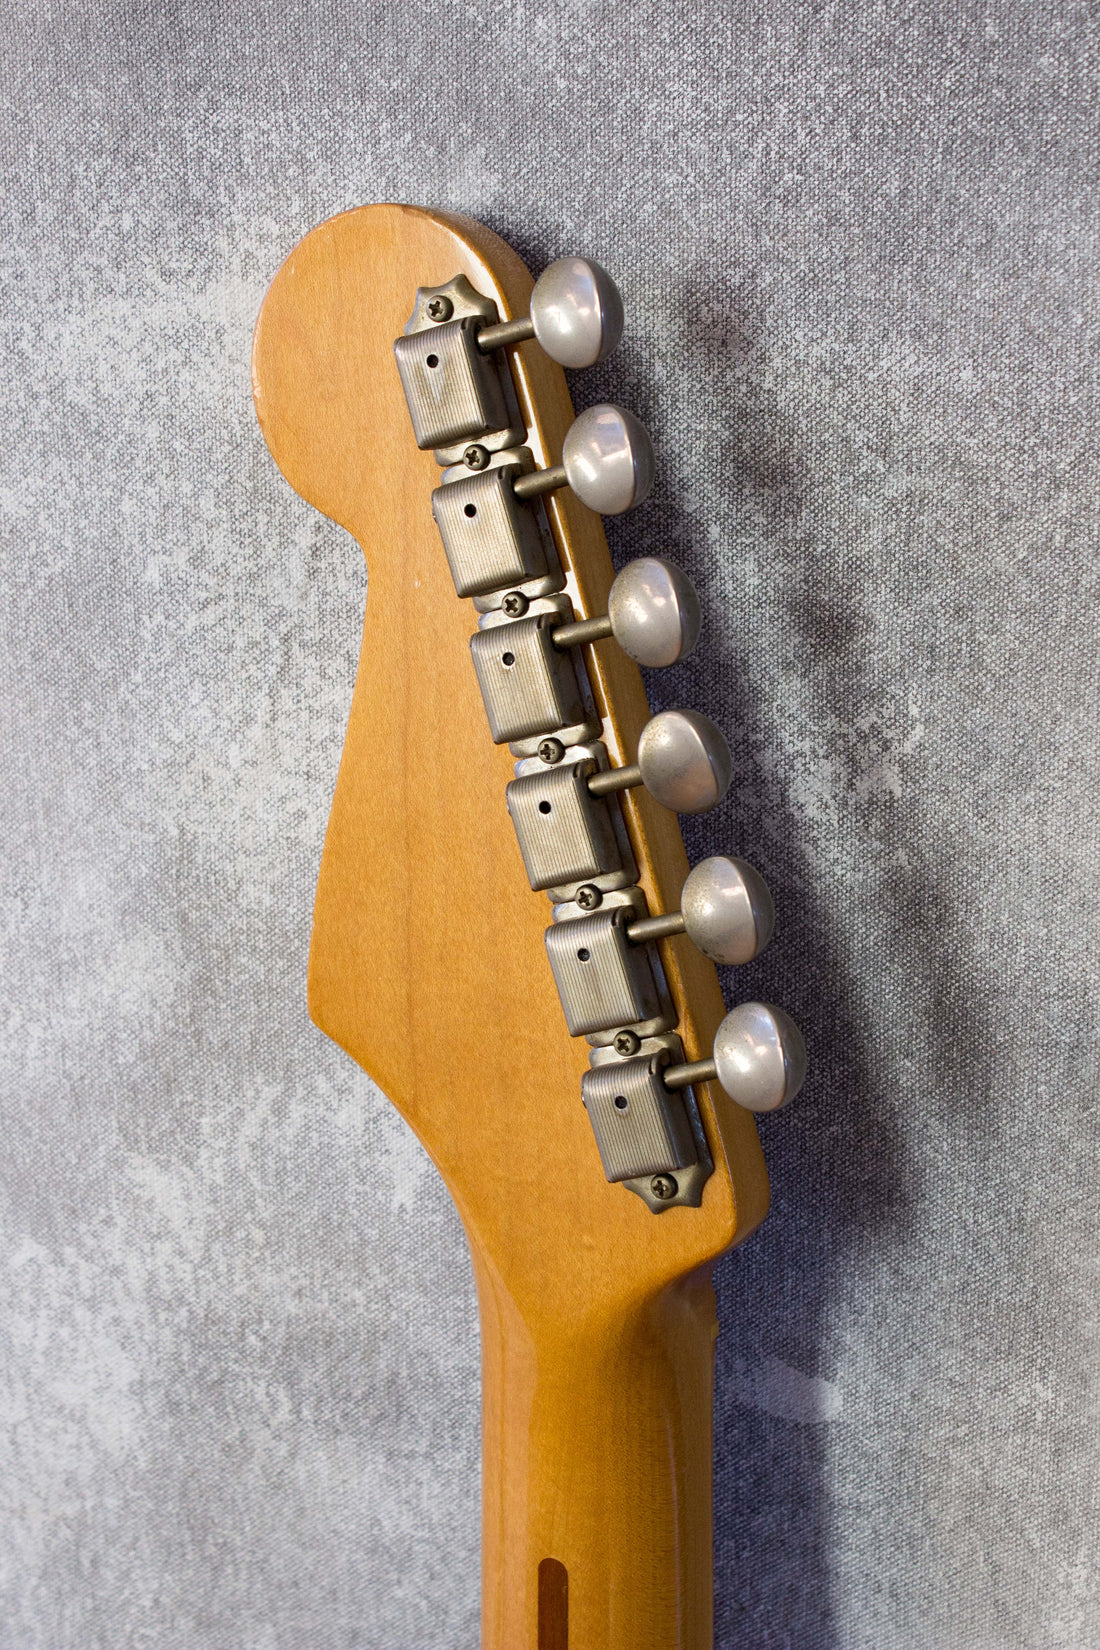 Fender Japan '57 Stratocaster ST57-70 Black JV Serial 1984